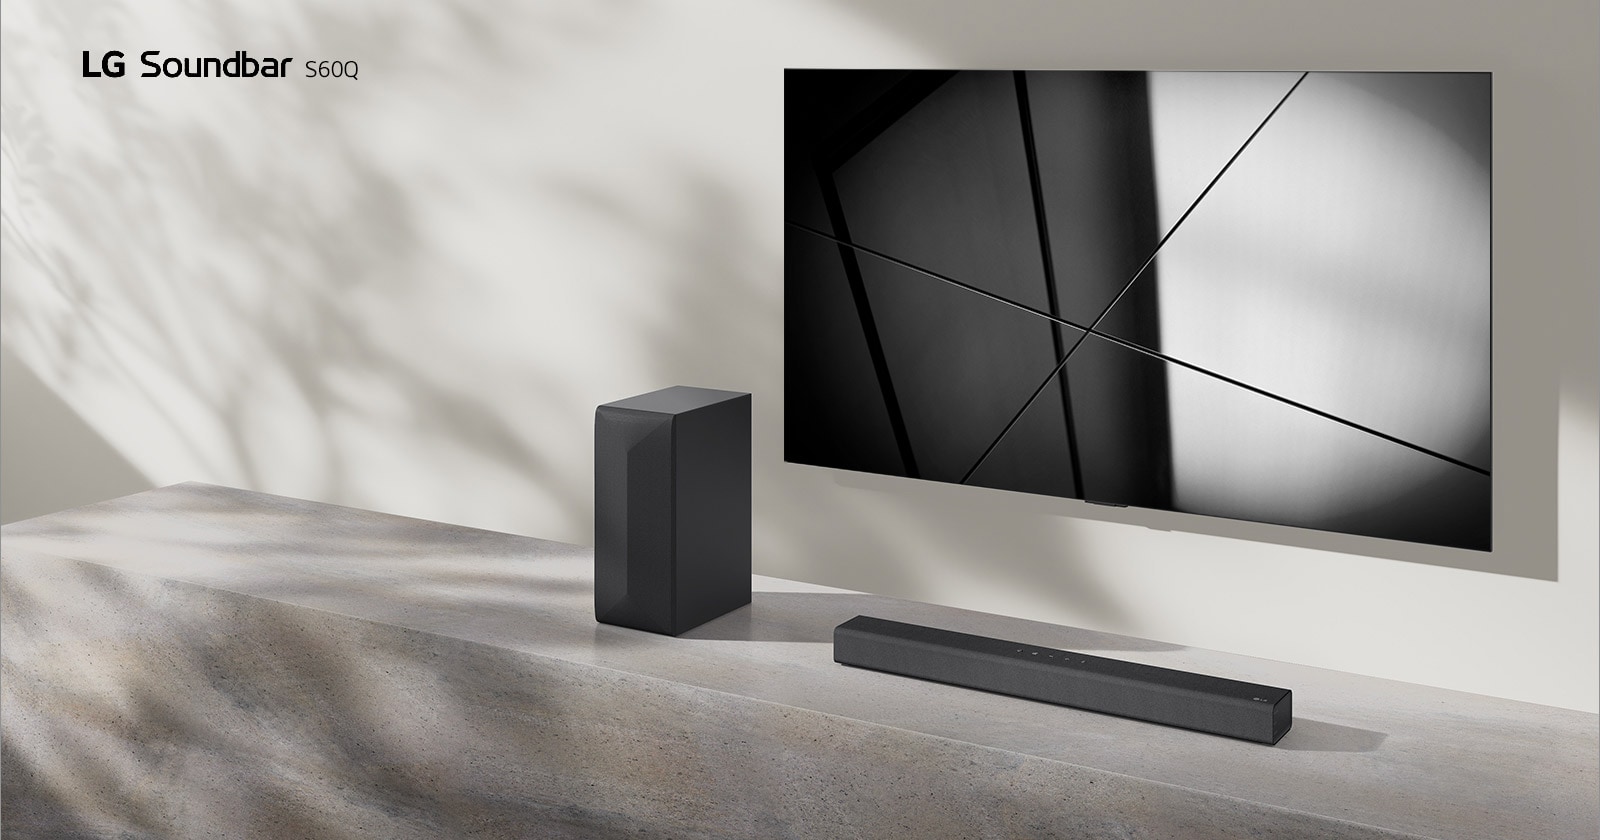 LG Саундбар S60Q и телевизор LG са поставени заедно във всекидневна. Телевизорът е включен и показва геометрично изображение.